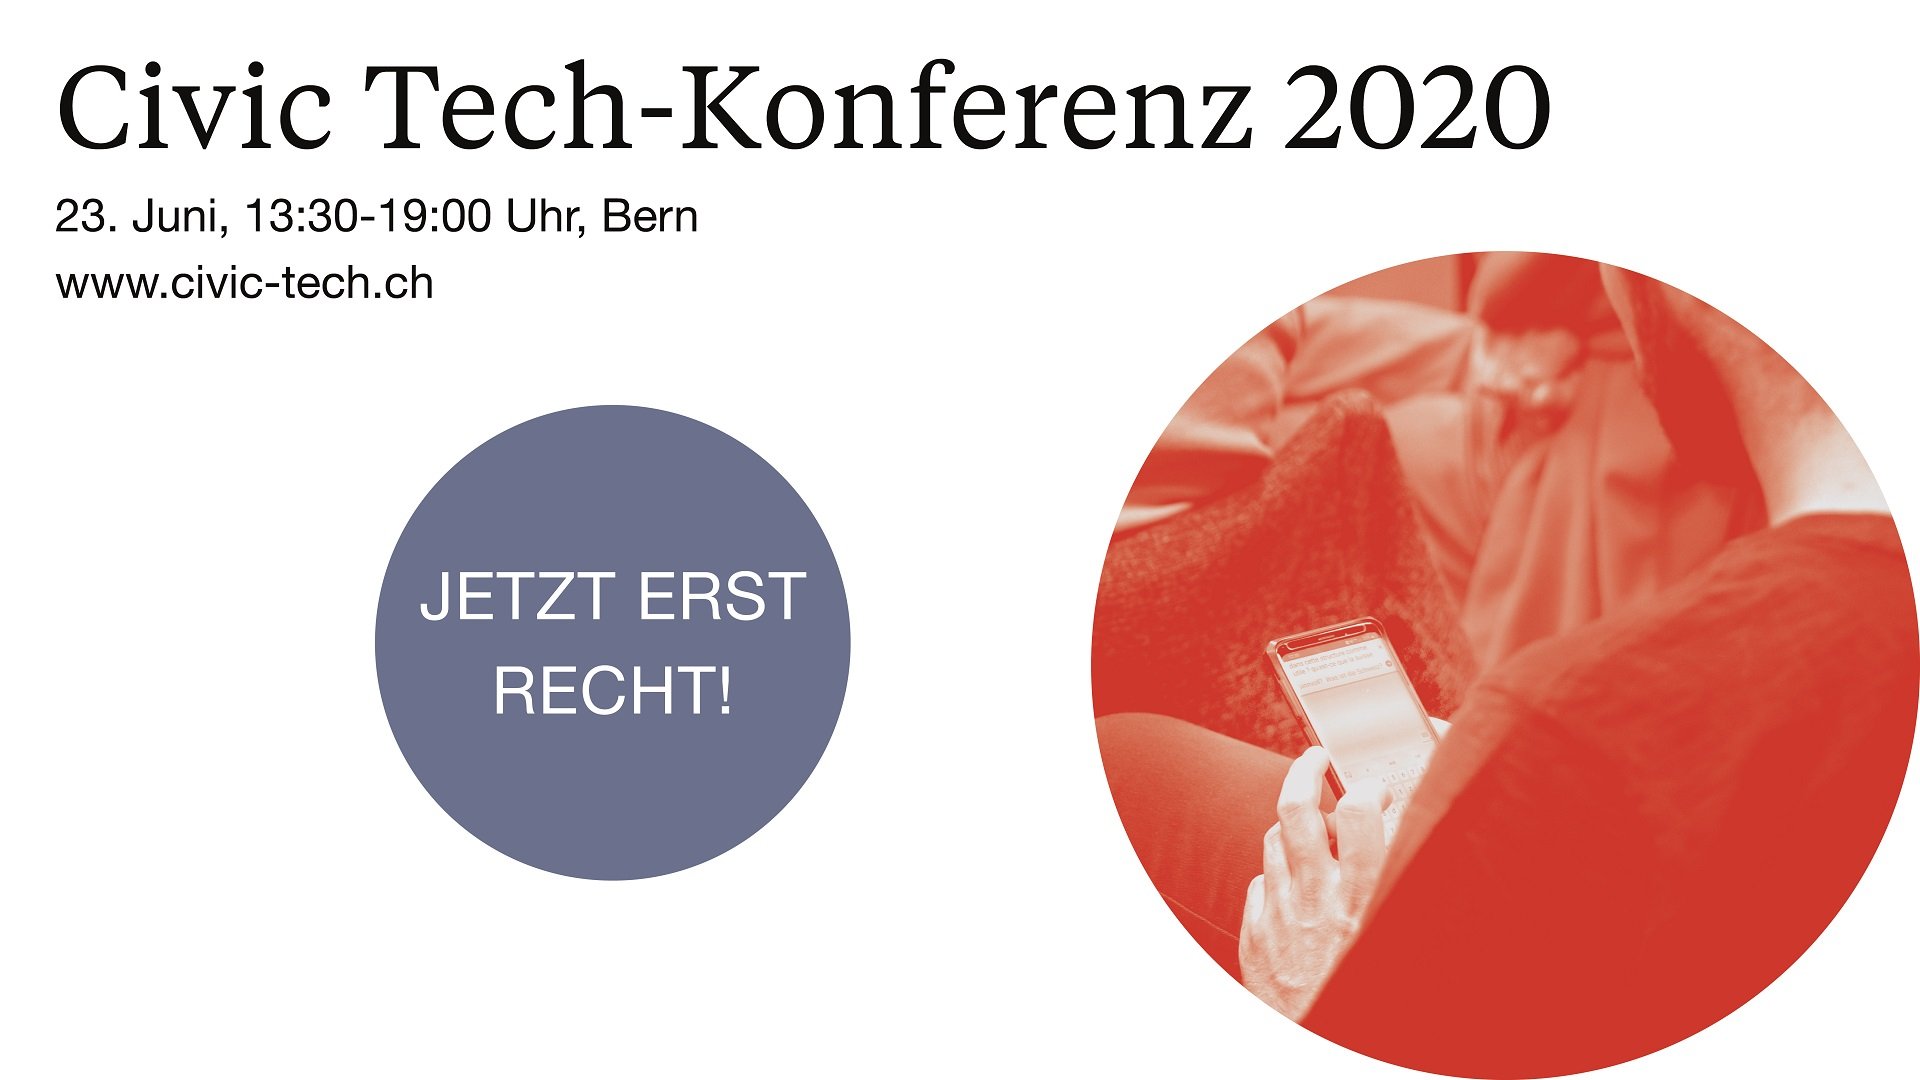 Civic Tech-Konferenz 2020